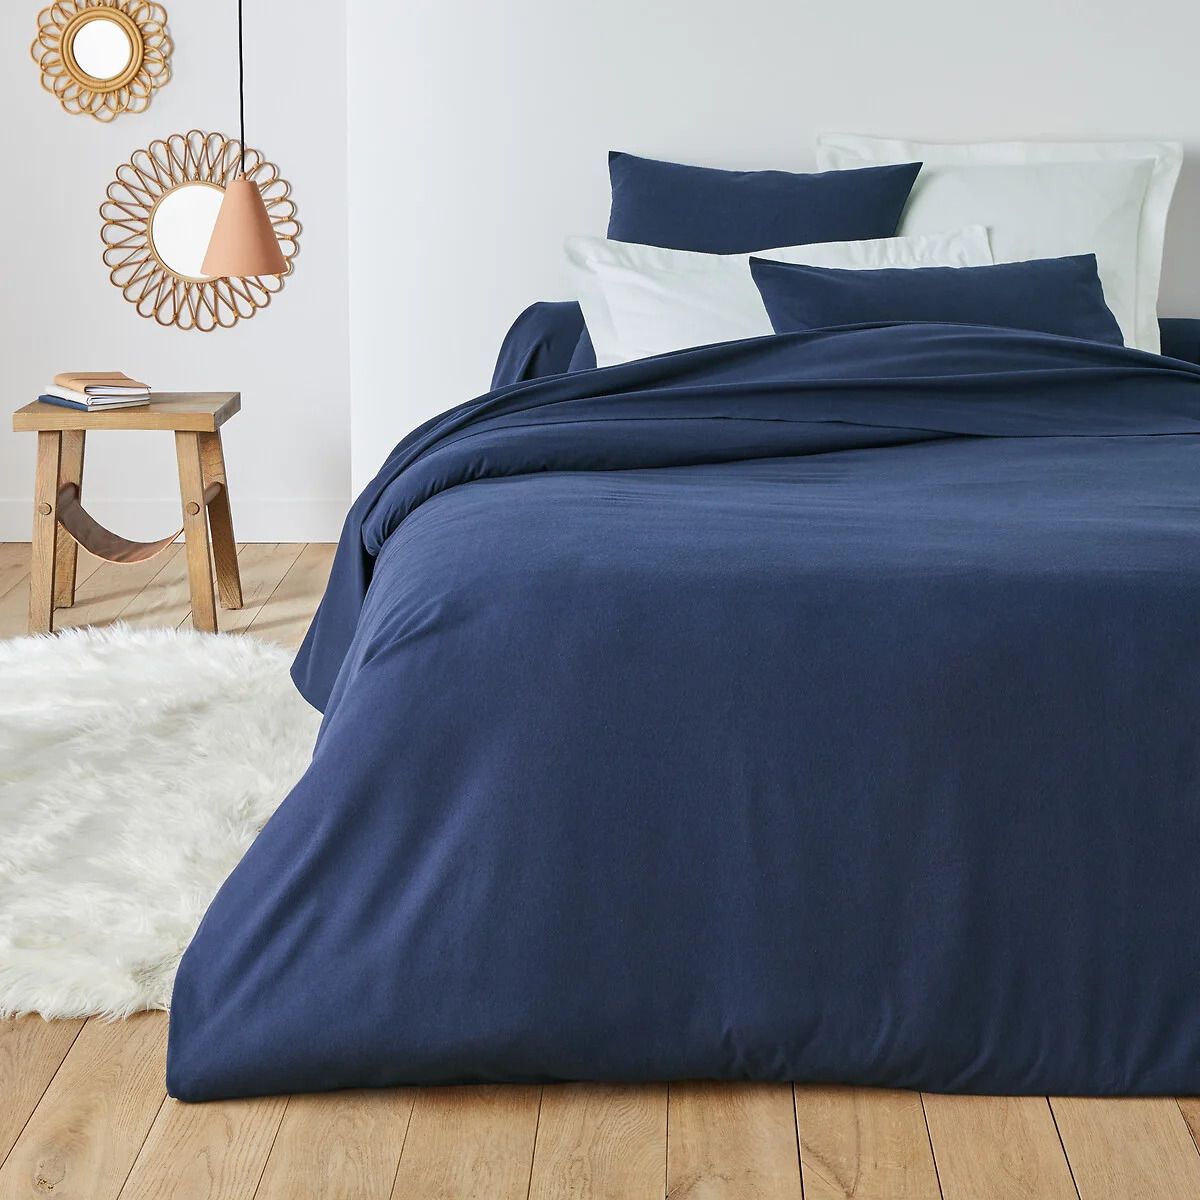 Cosy Cotton Duvet Cover, Super Soft Cotton Bed Linen Sets